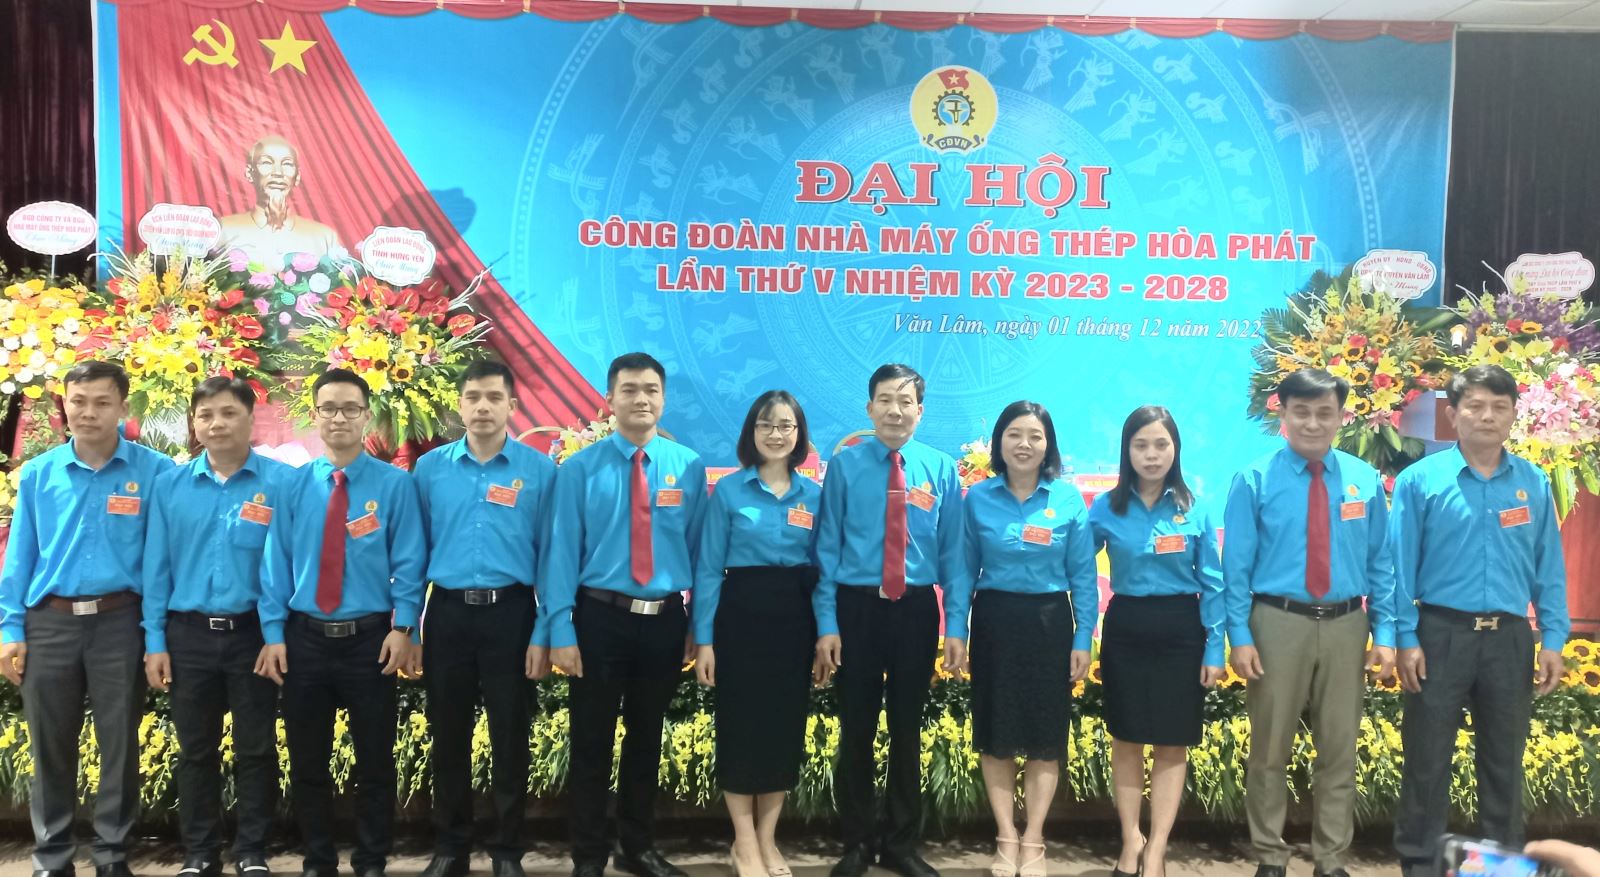 Đại hội điểm công đoàn cơ sở Nhà máy Ống thép Hòa Phát,  nhiệm kì 2023- 2028